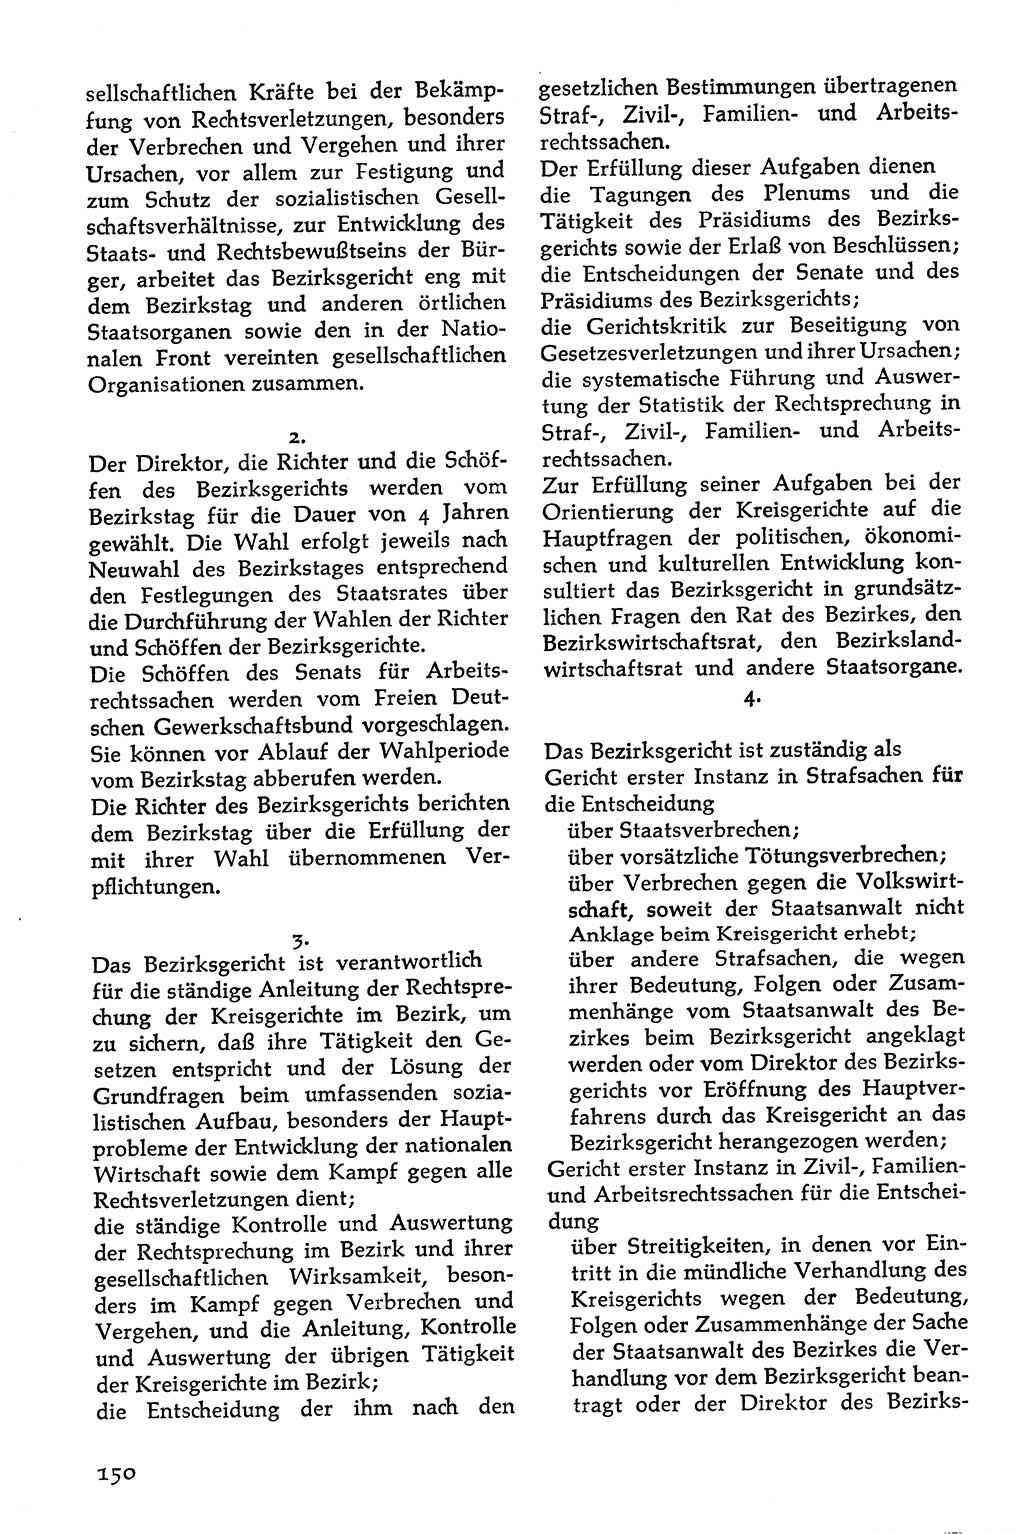 Volksdemokratische Ordnung in Mitteldeutschland [Deutsche Demokratische Republik (DDR)], Texte zur verfassungsrechtlichen Situation 1963, Seite 150 (Volksdem. Ordn. Md. DDR 1963, S. 150)